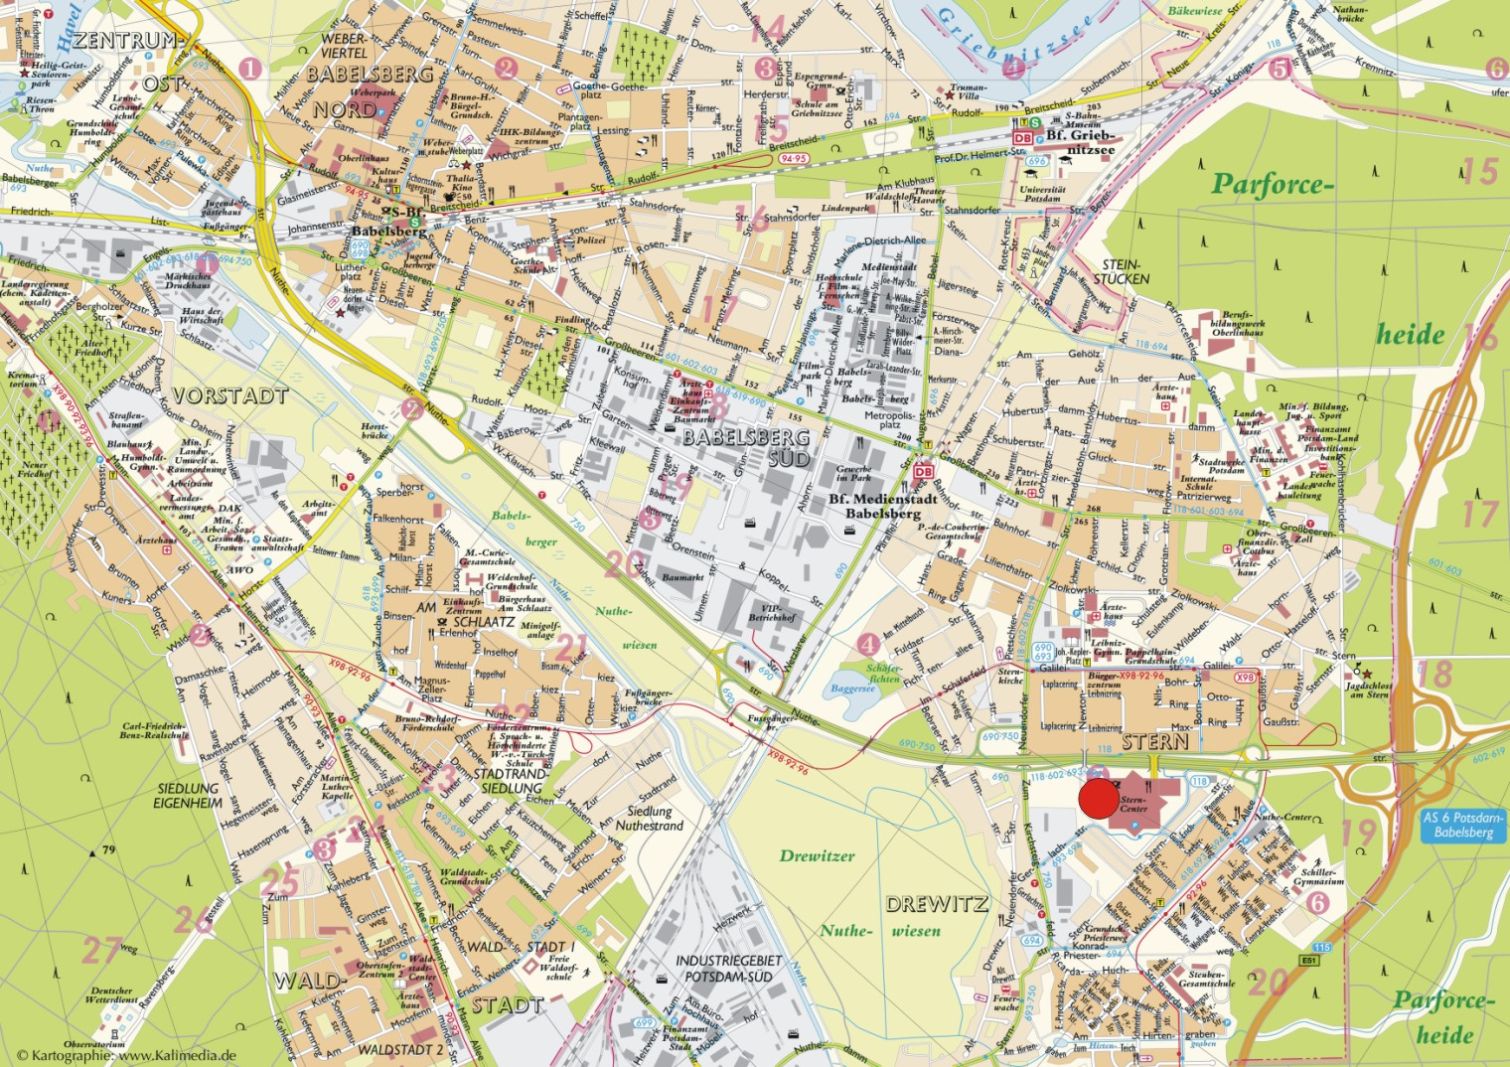 Potsdam center map